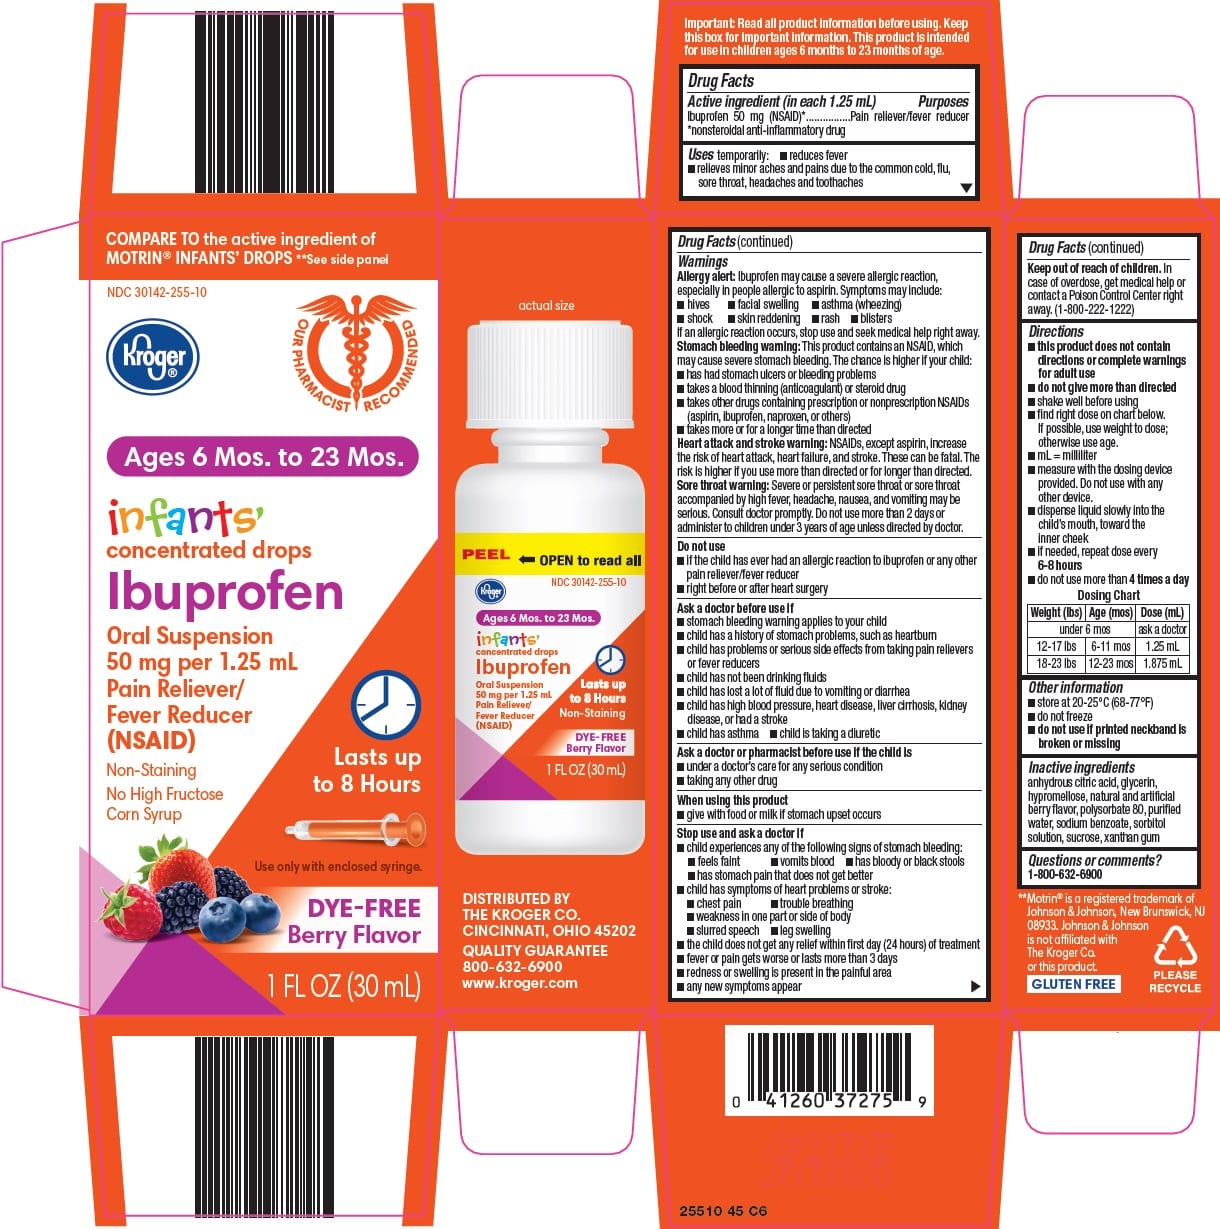 Heartburn Medicine And Ibuprofin